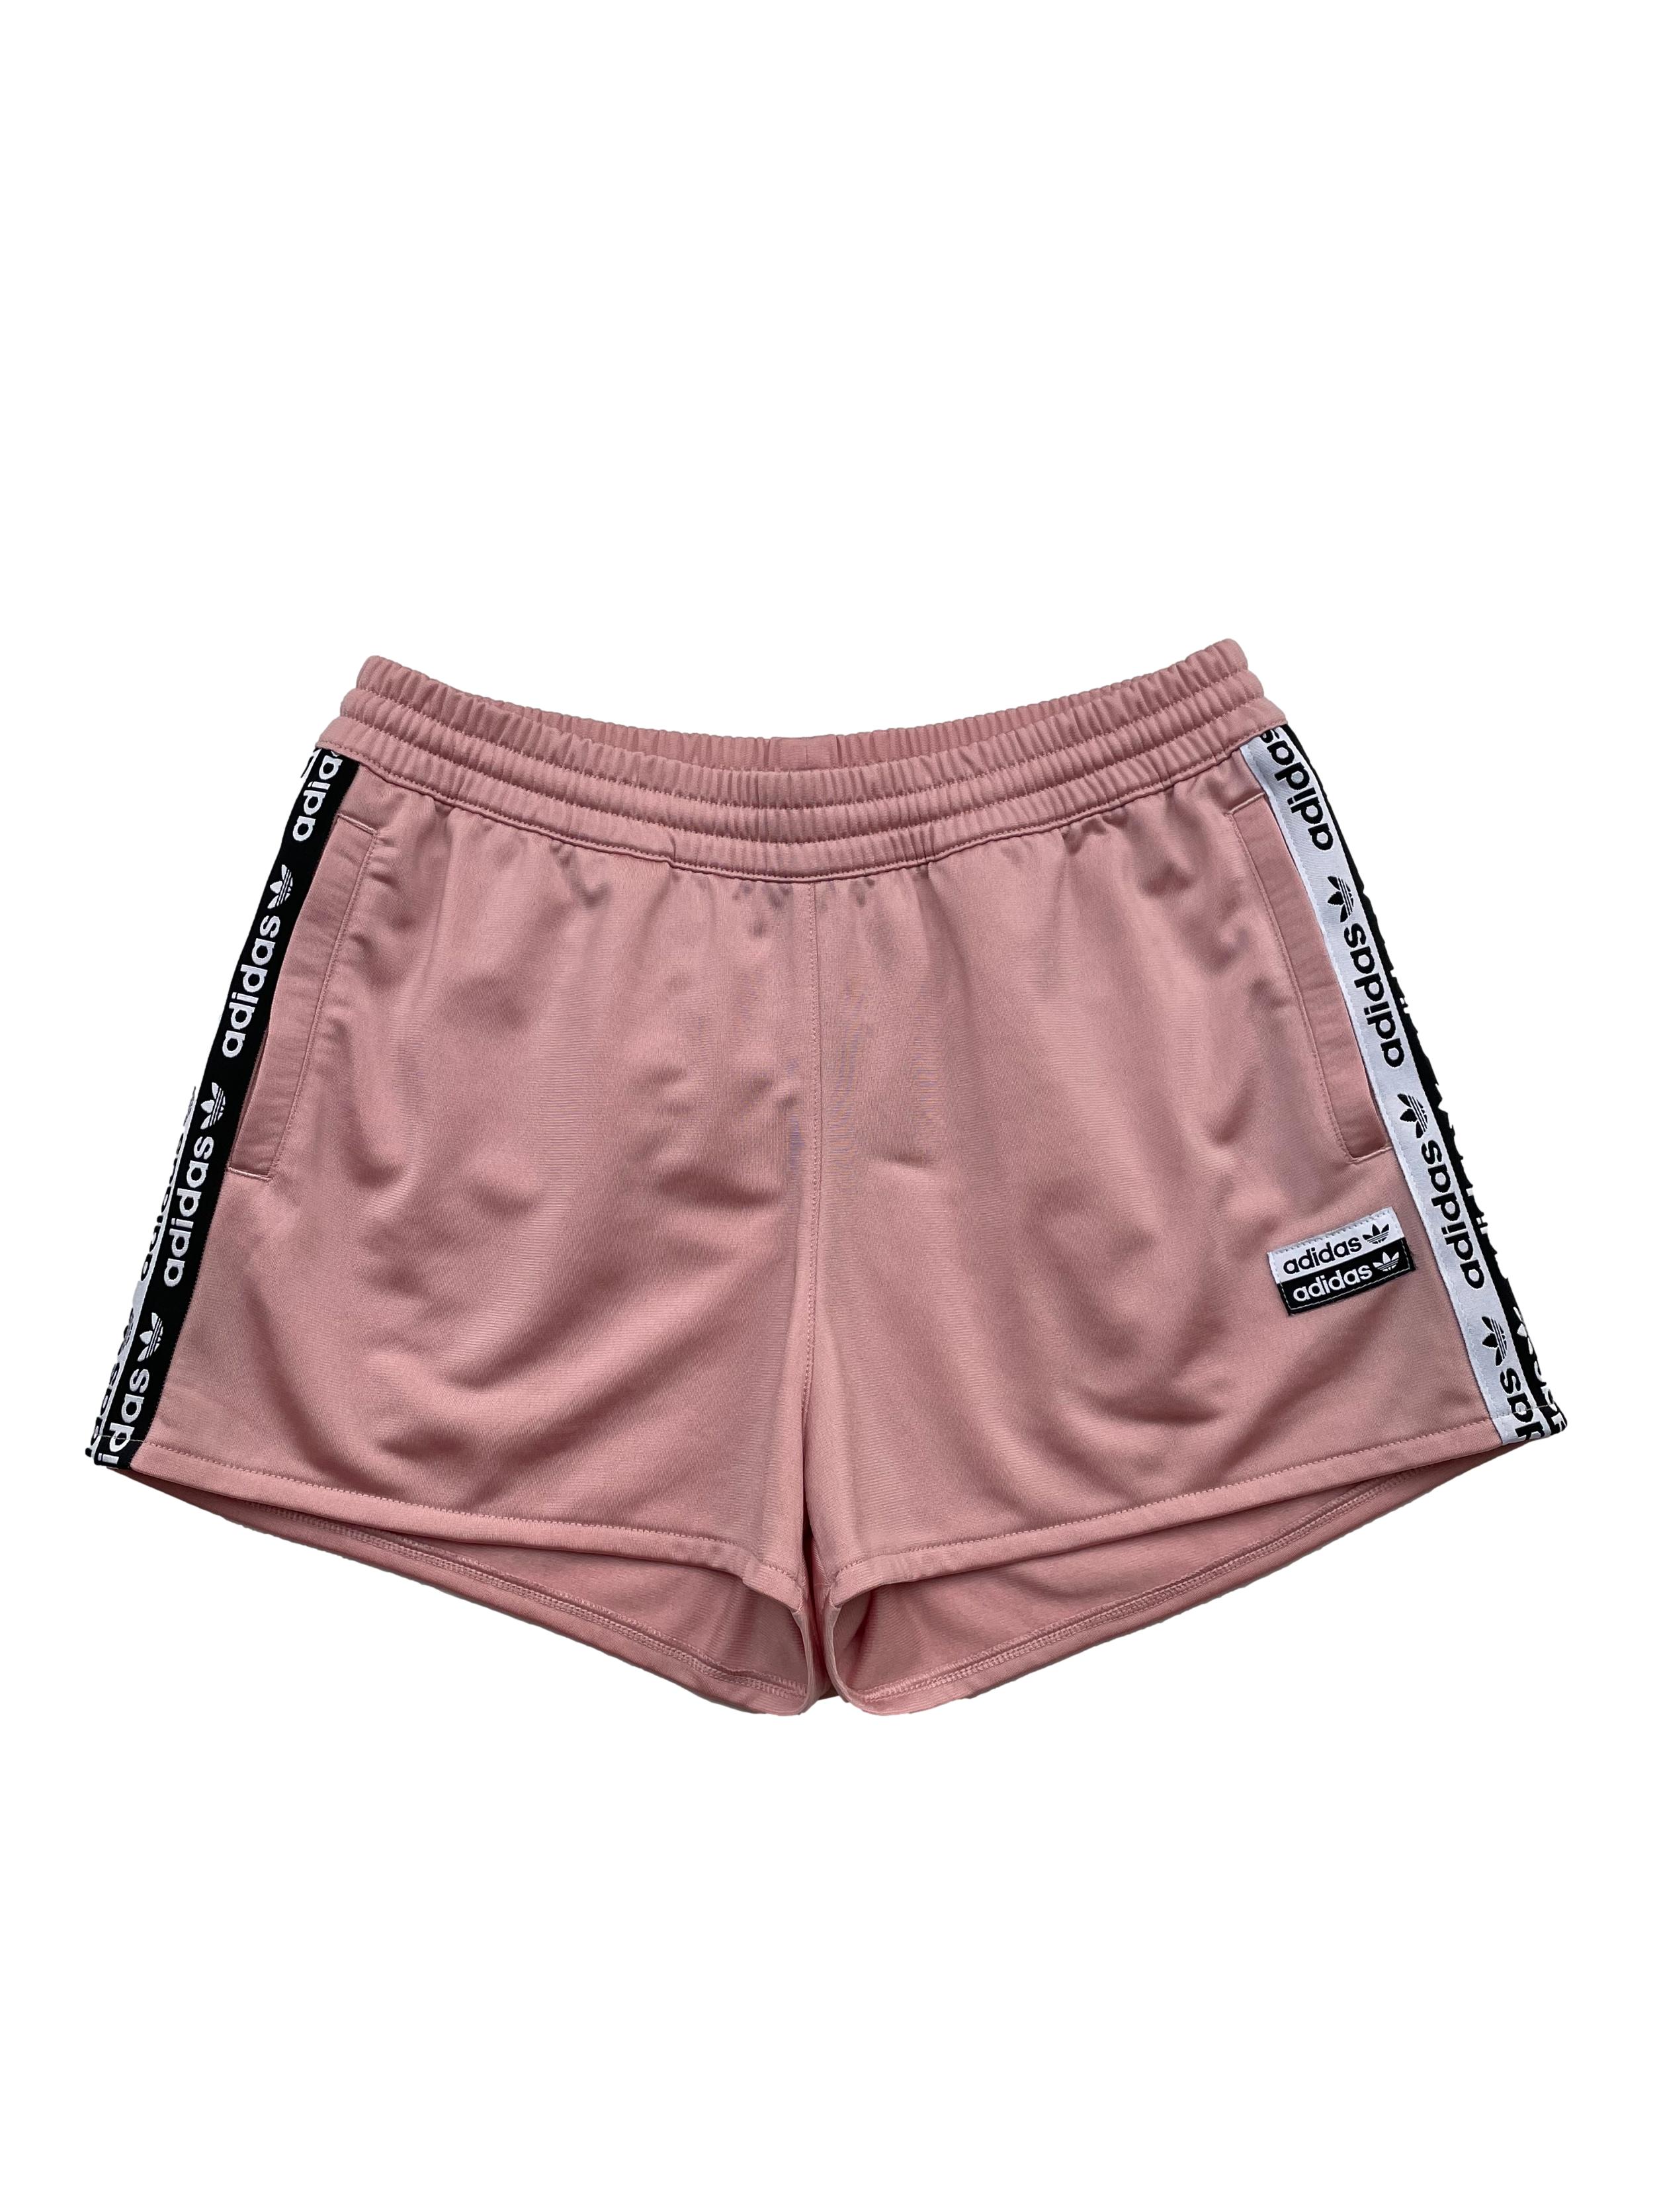 Skalk Mediana rehén Short Adidas palo rosa con franjas y bolsillos laterales. Cintura 70cm  Largo 32cm | Las Traperas